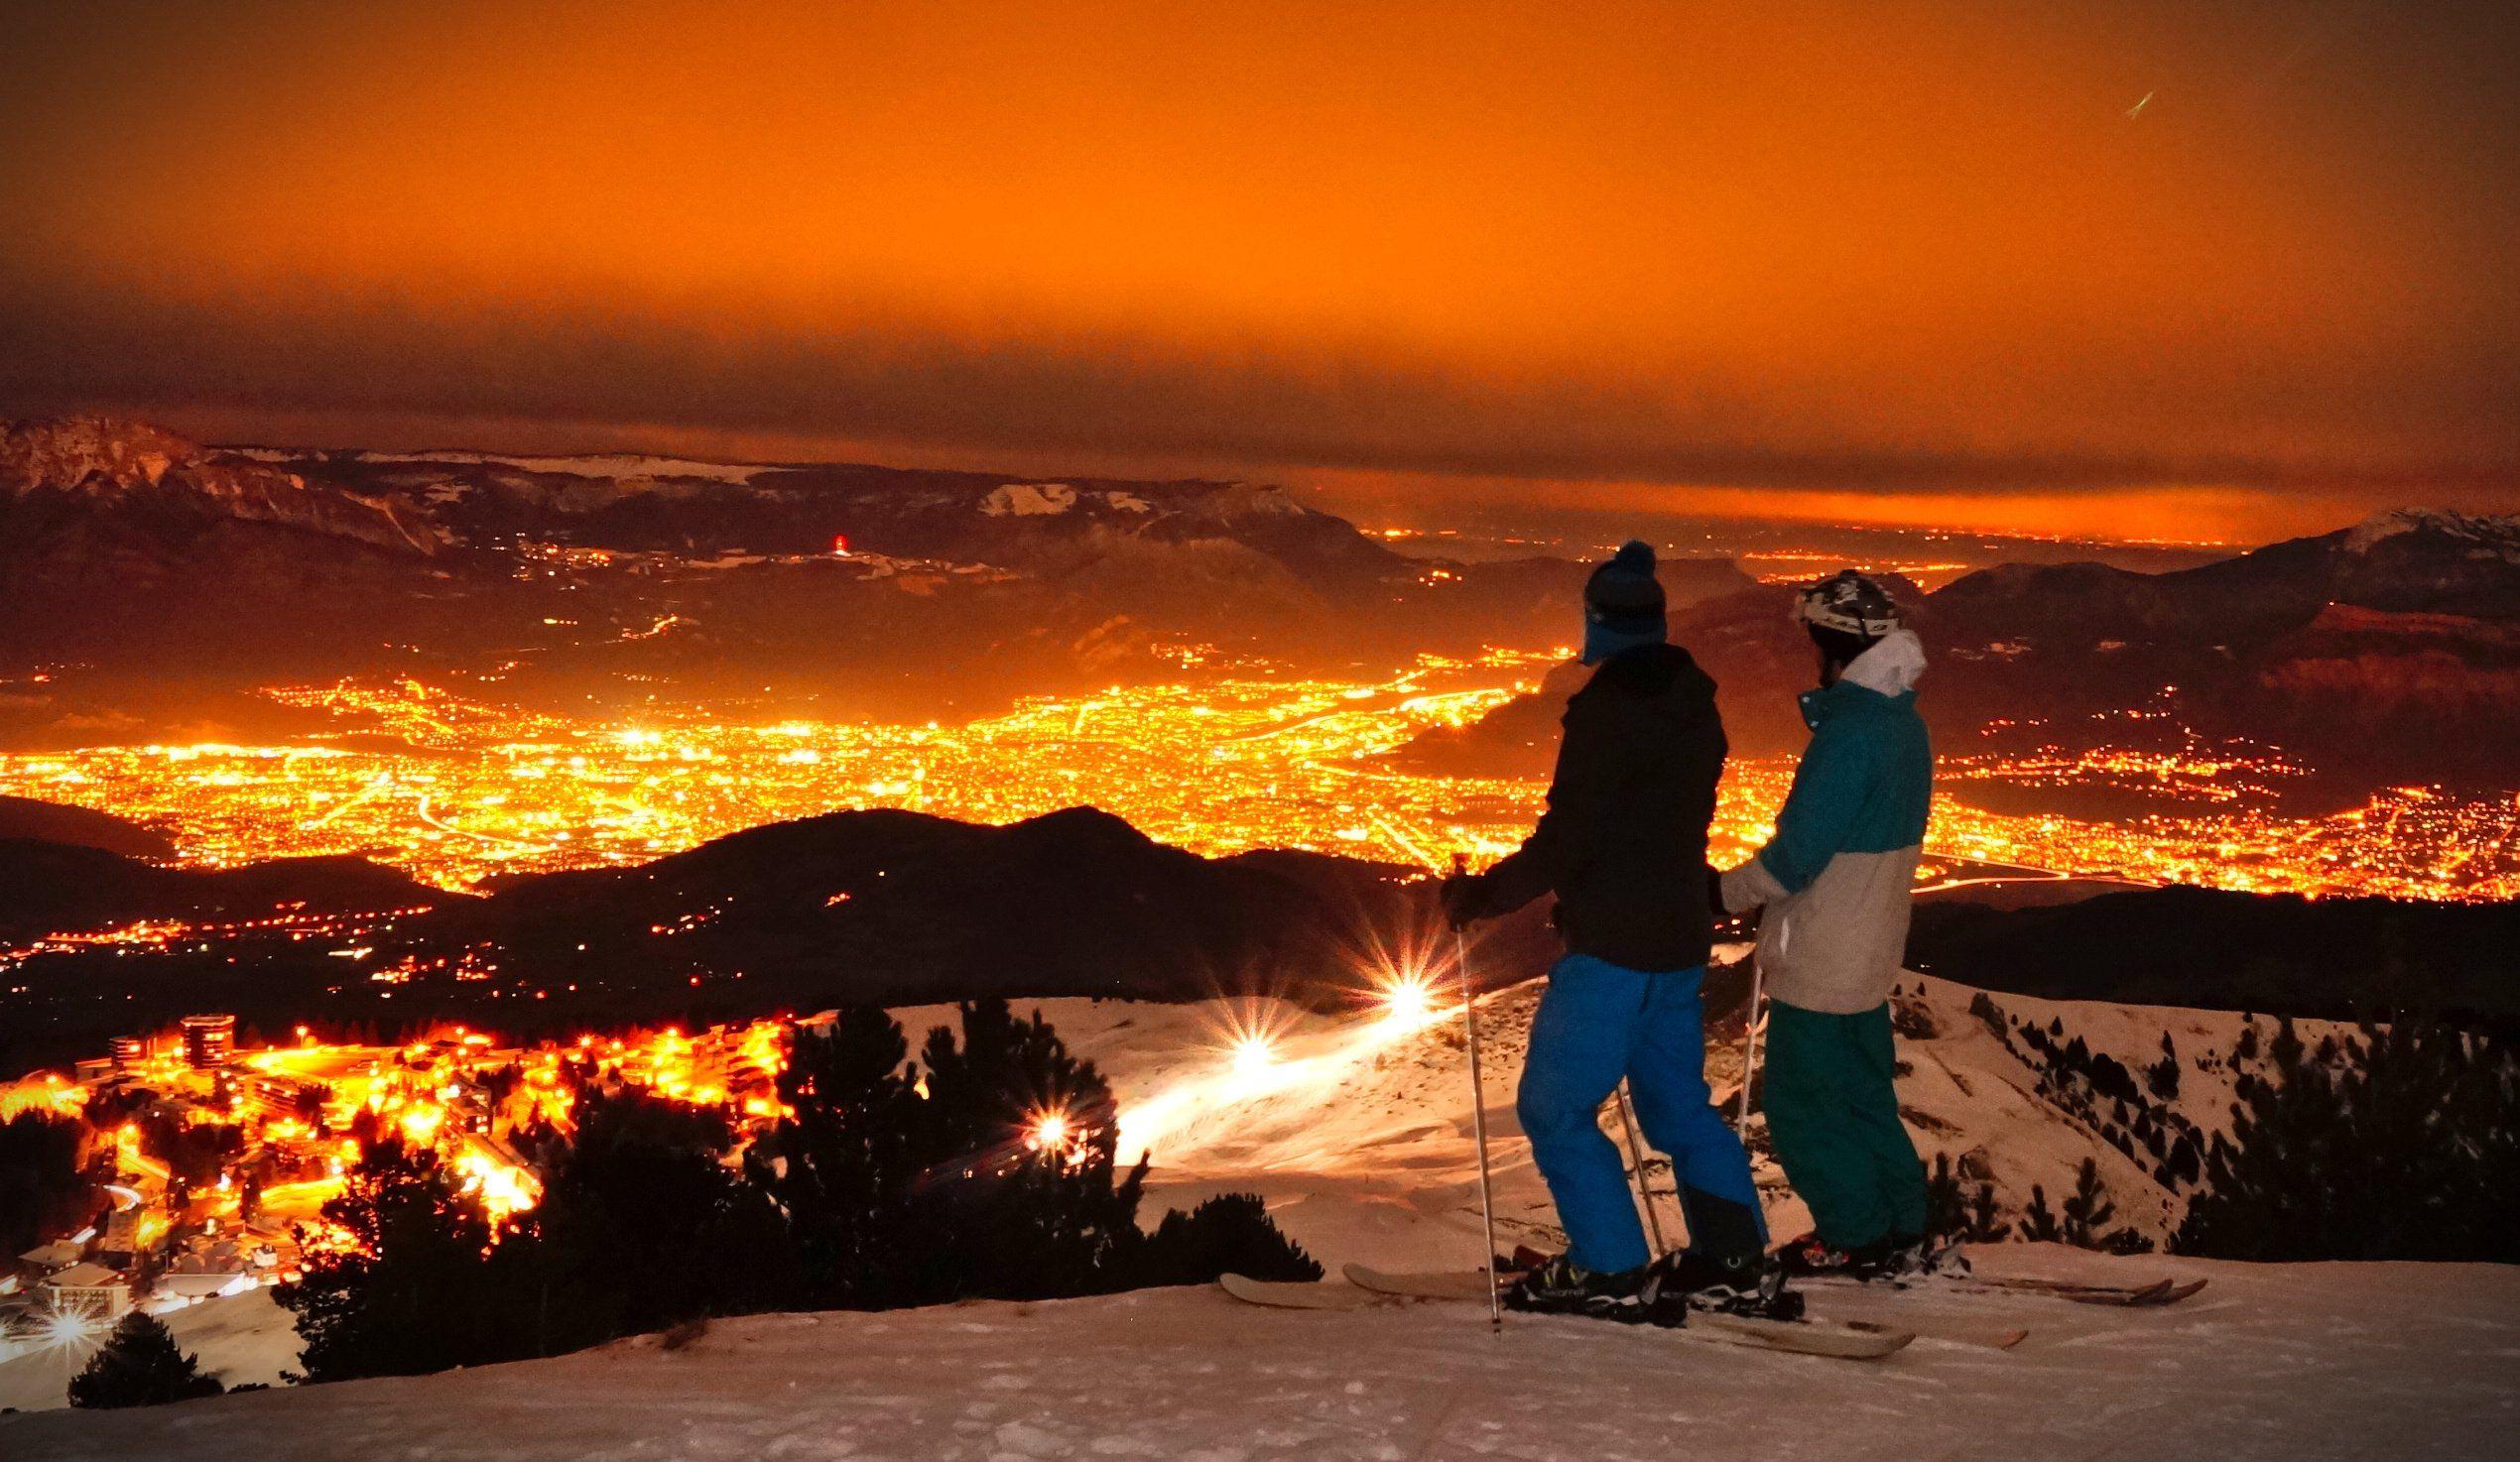 Le ski de nuit : comment ça marche ?